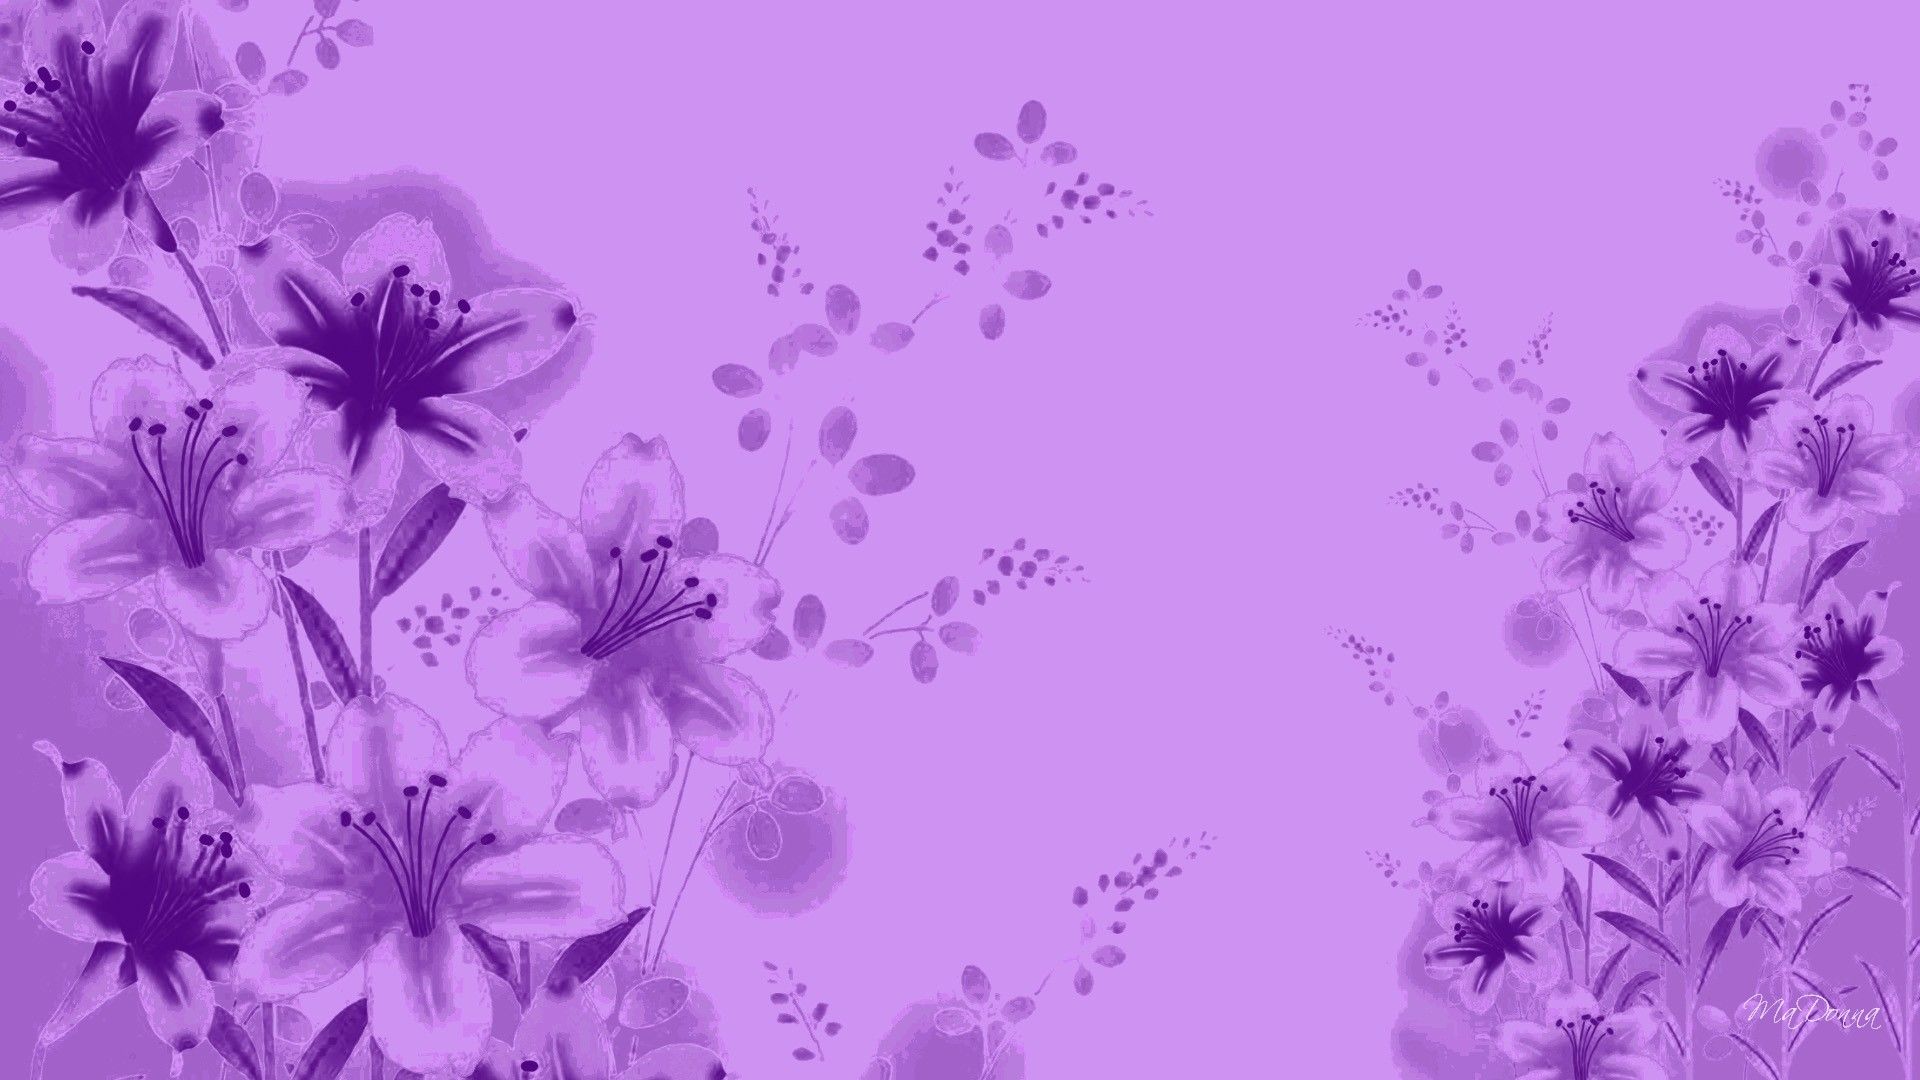 Lavender Color Wallpaper - Papel pintado, alta definición, alta calidad